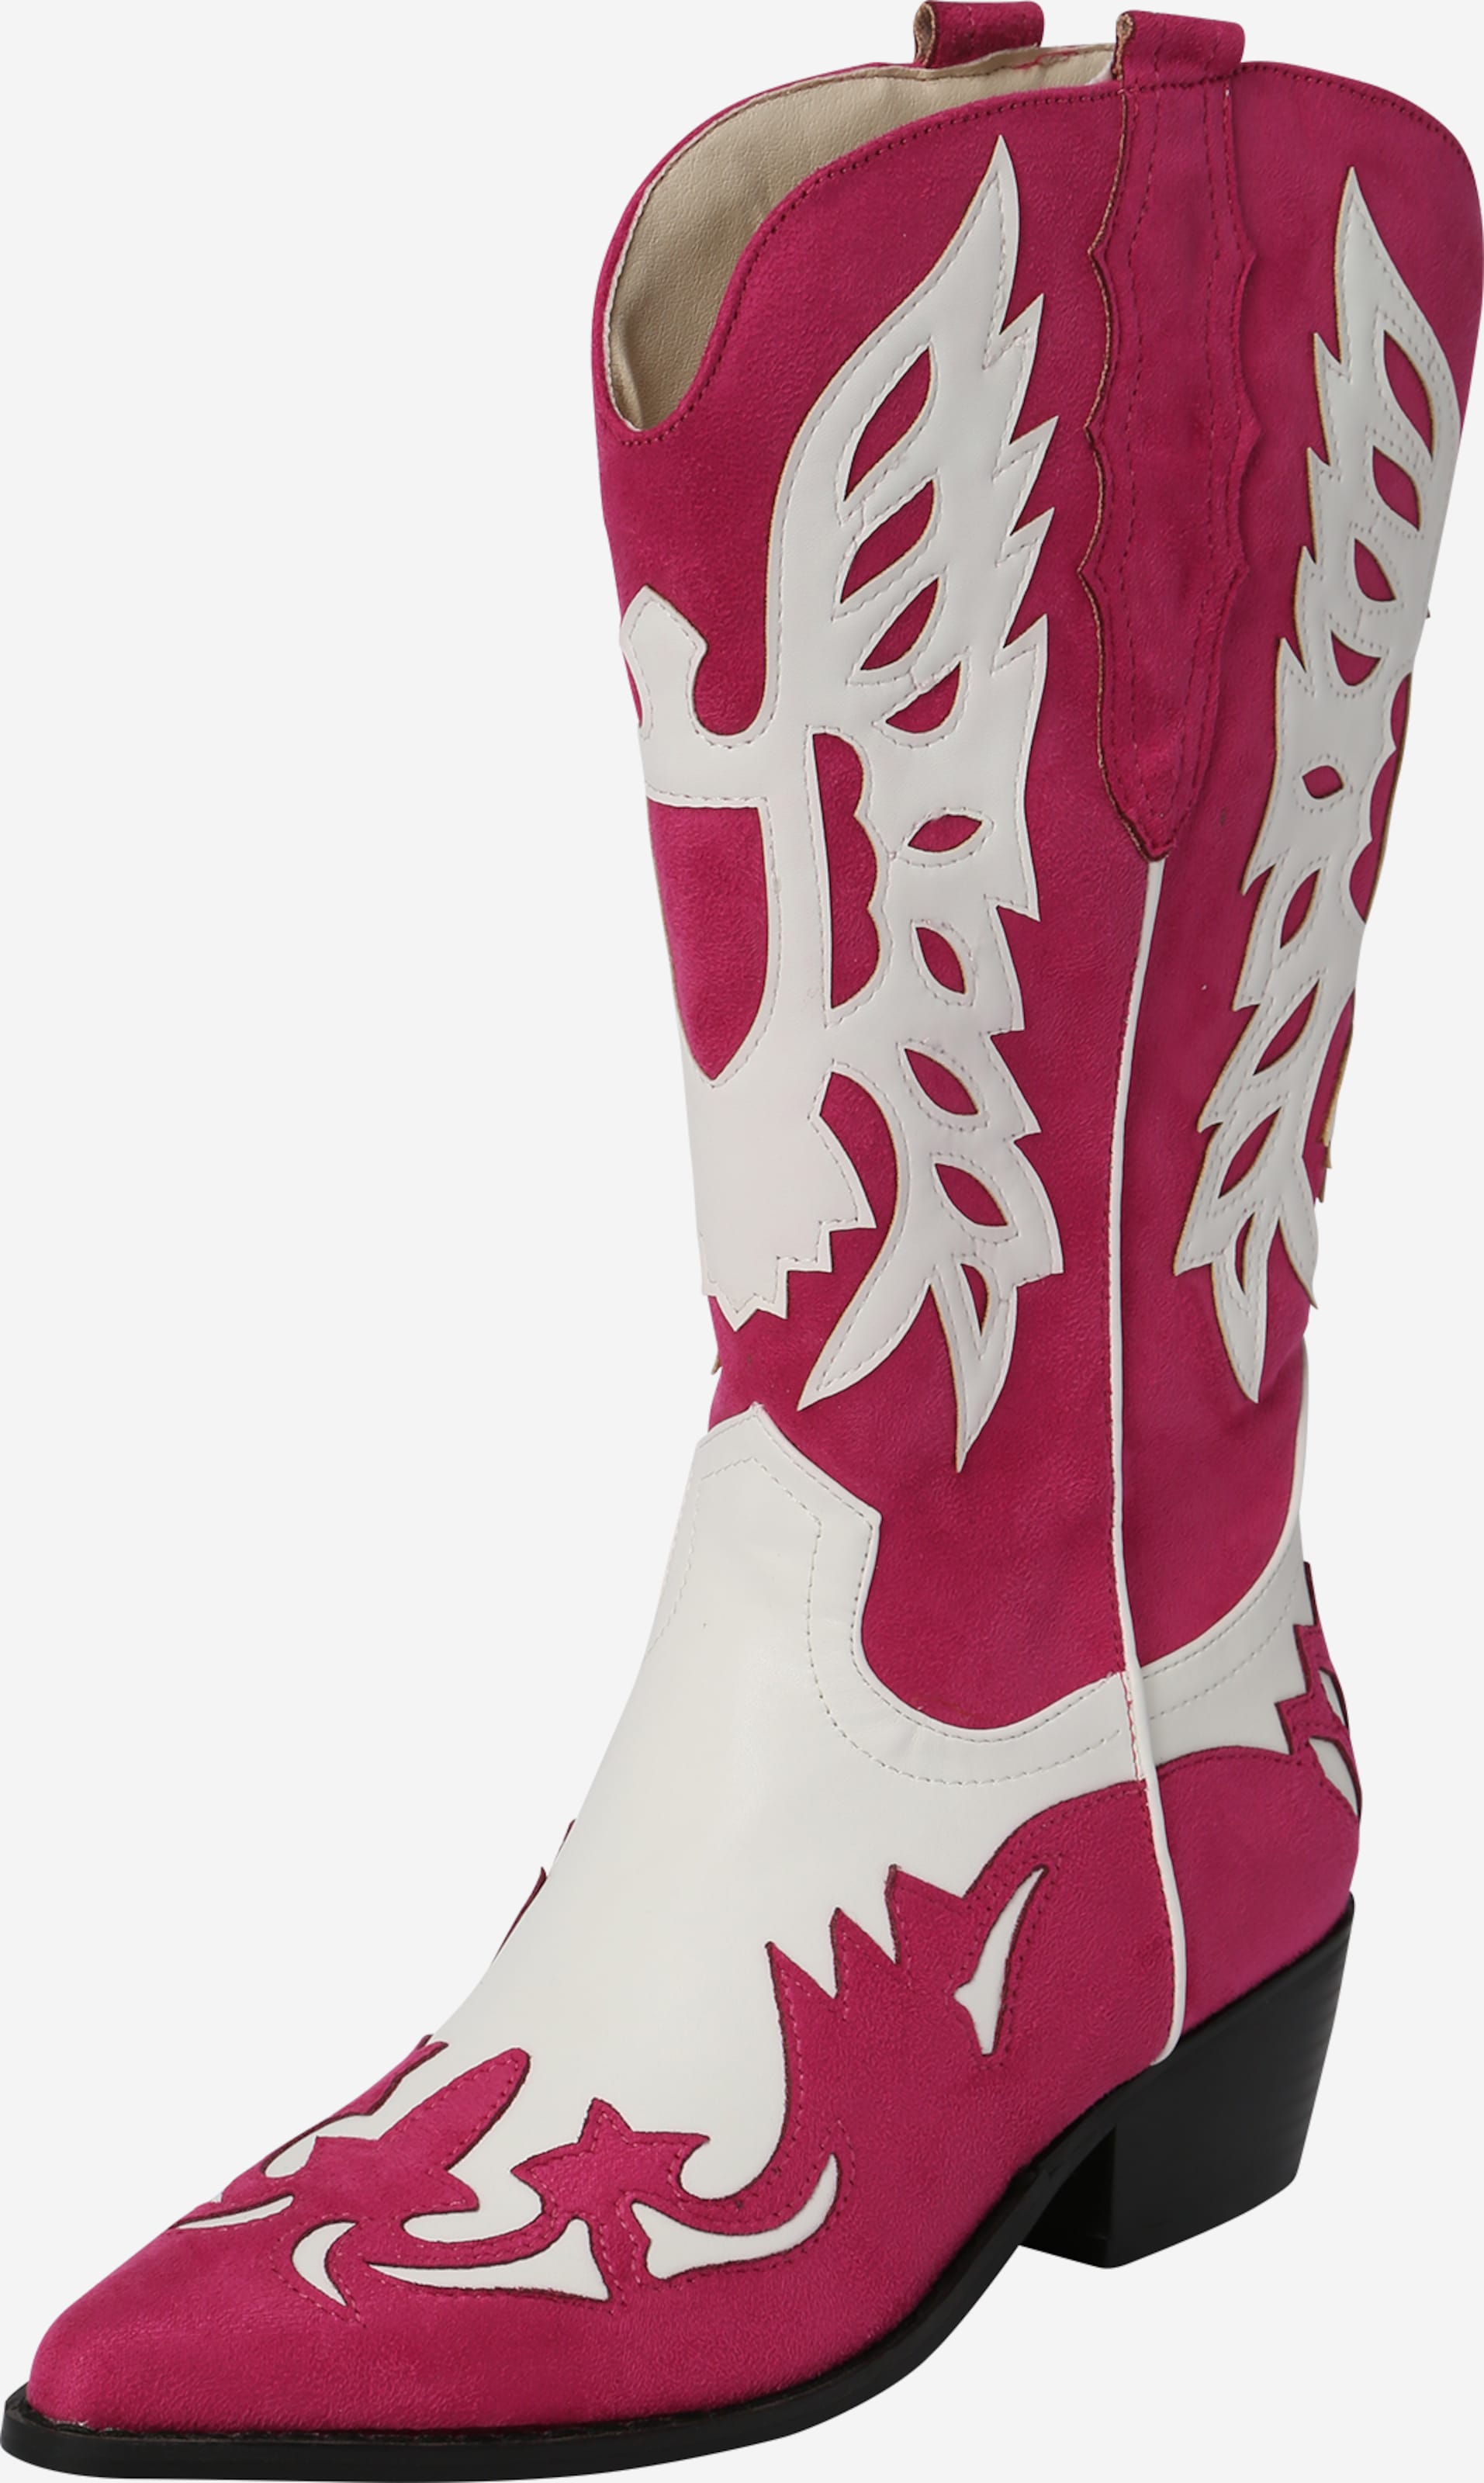 ukrudtsplante eksperimentel Undertrykke Pinke støvler til damer » online hos ABOUT YOU